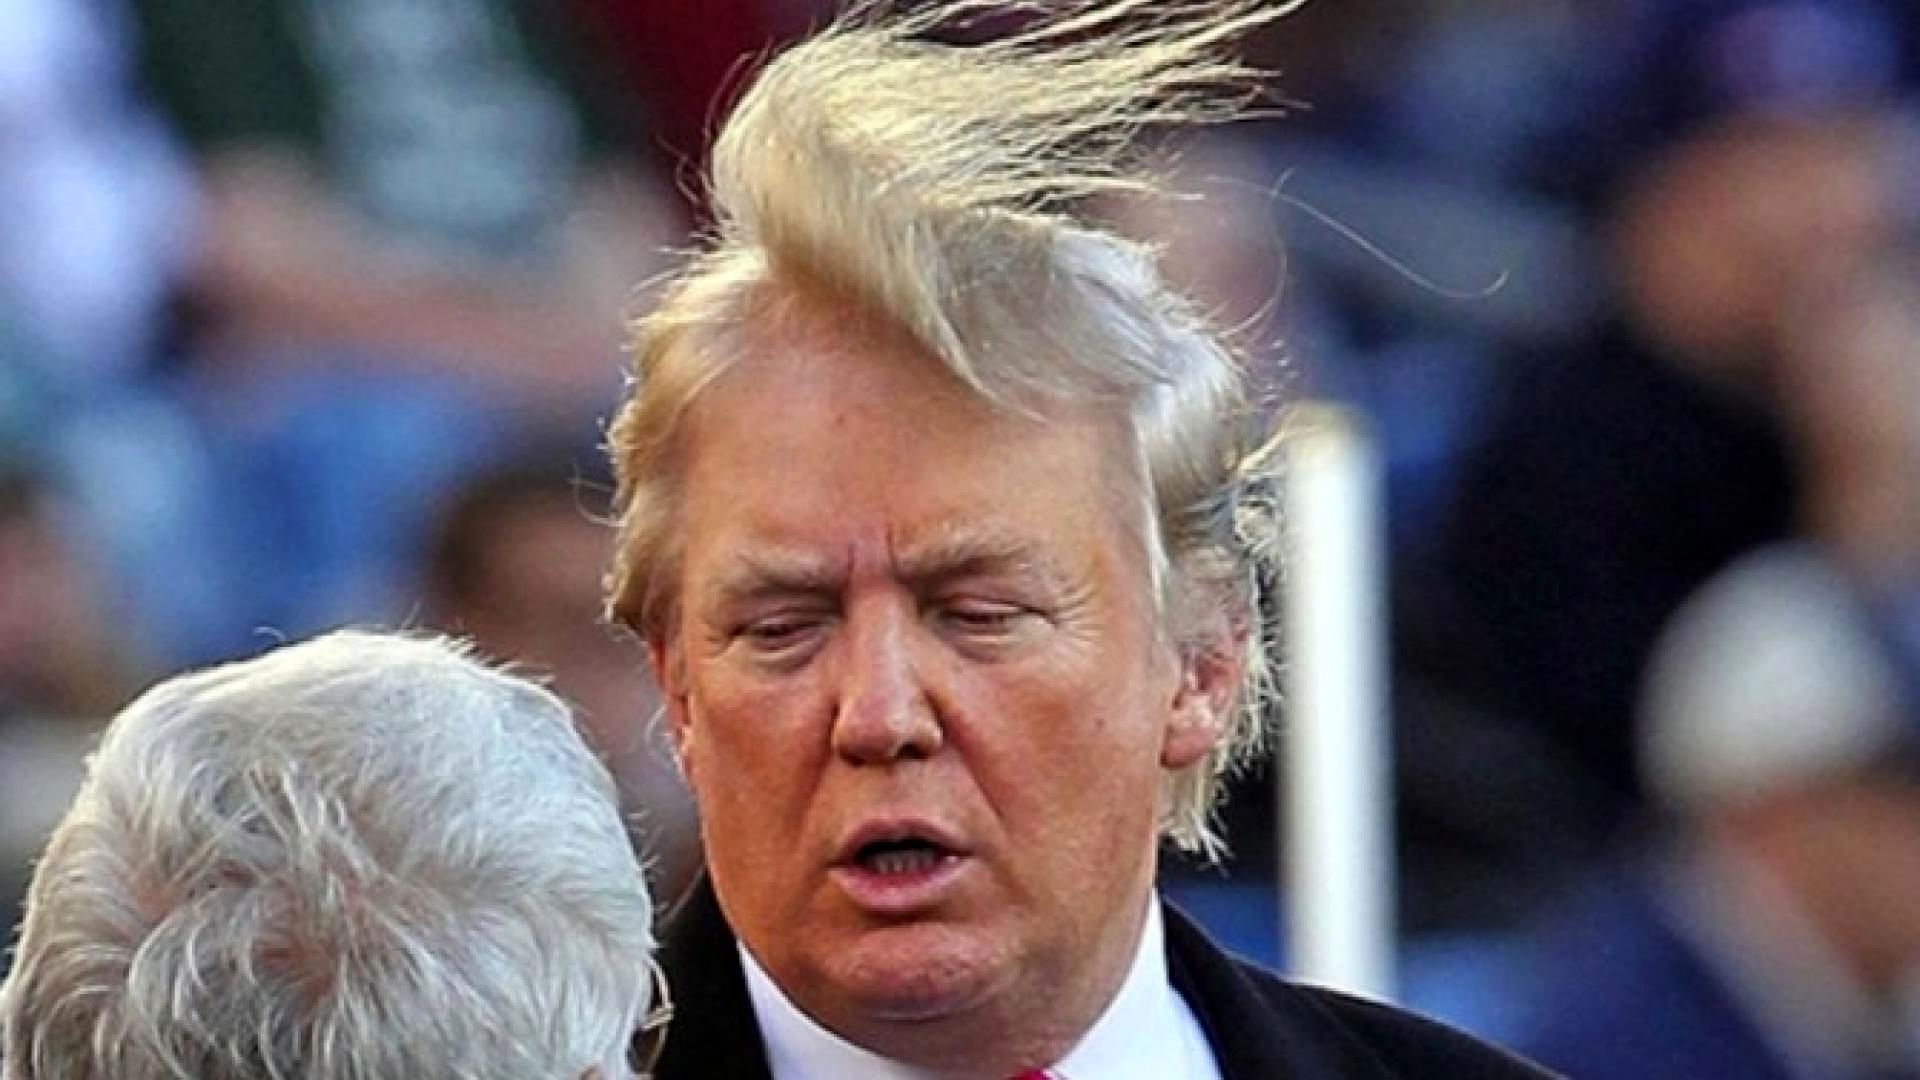 ترامپ بخاطر موهایش یک مراسم را لغو کرد